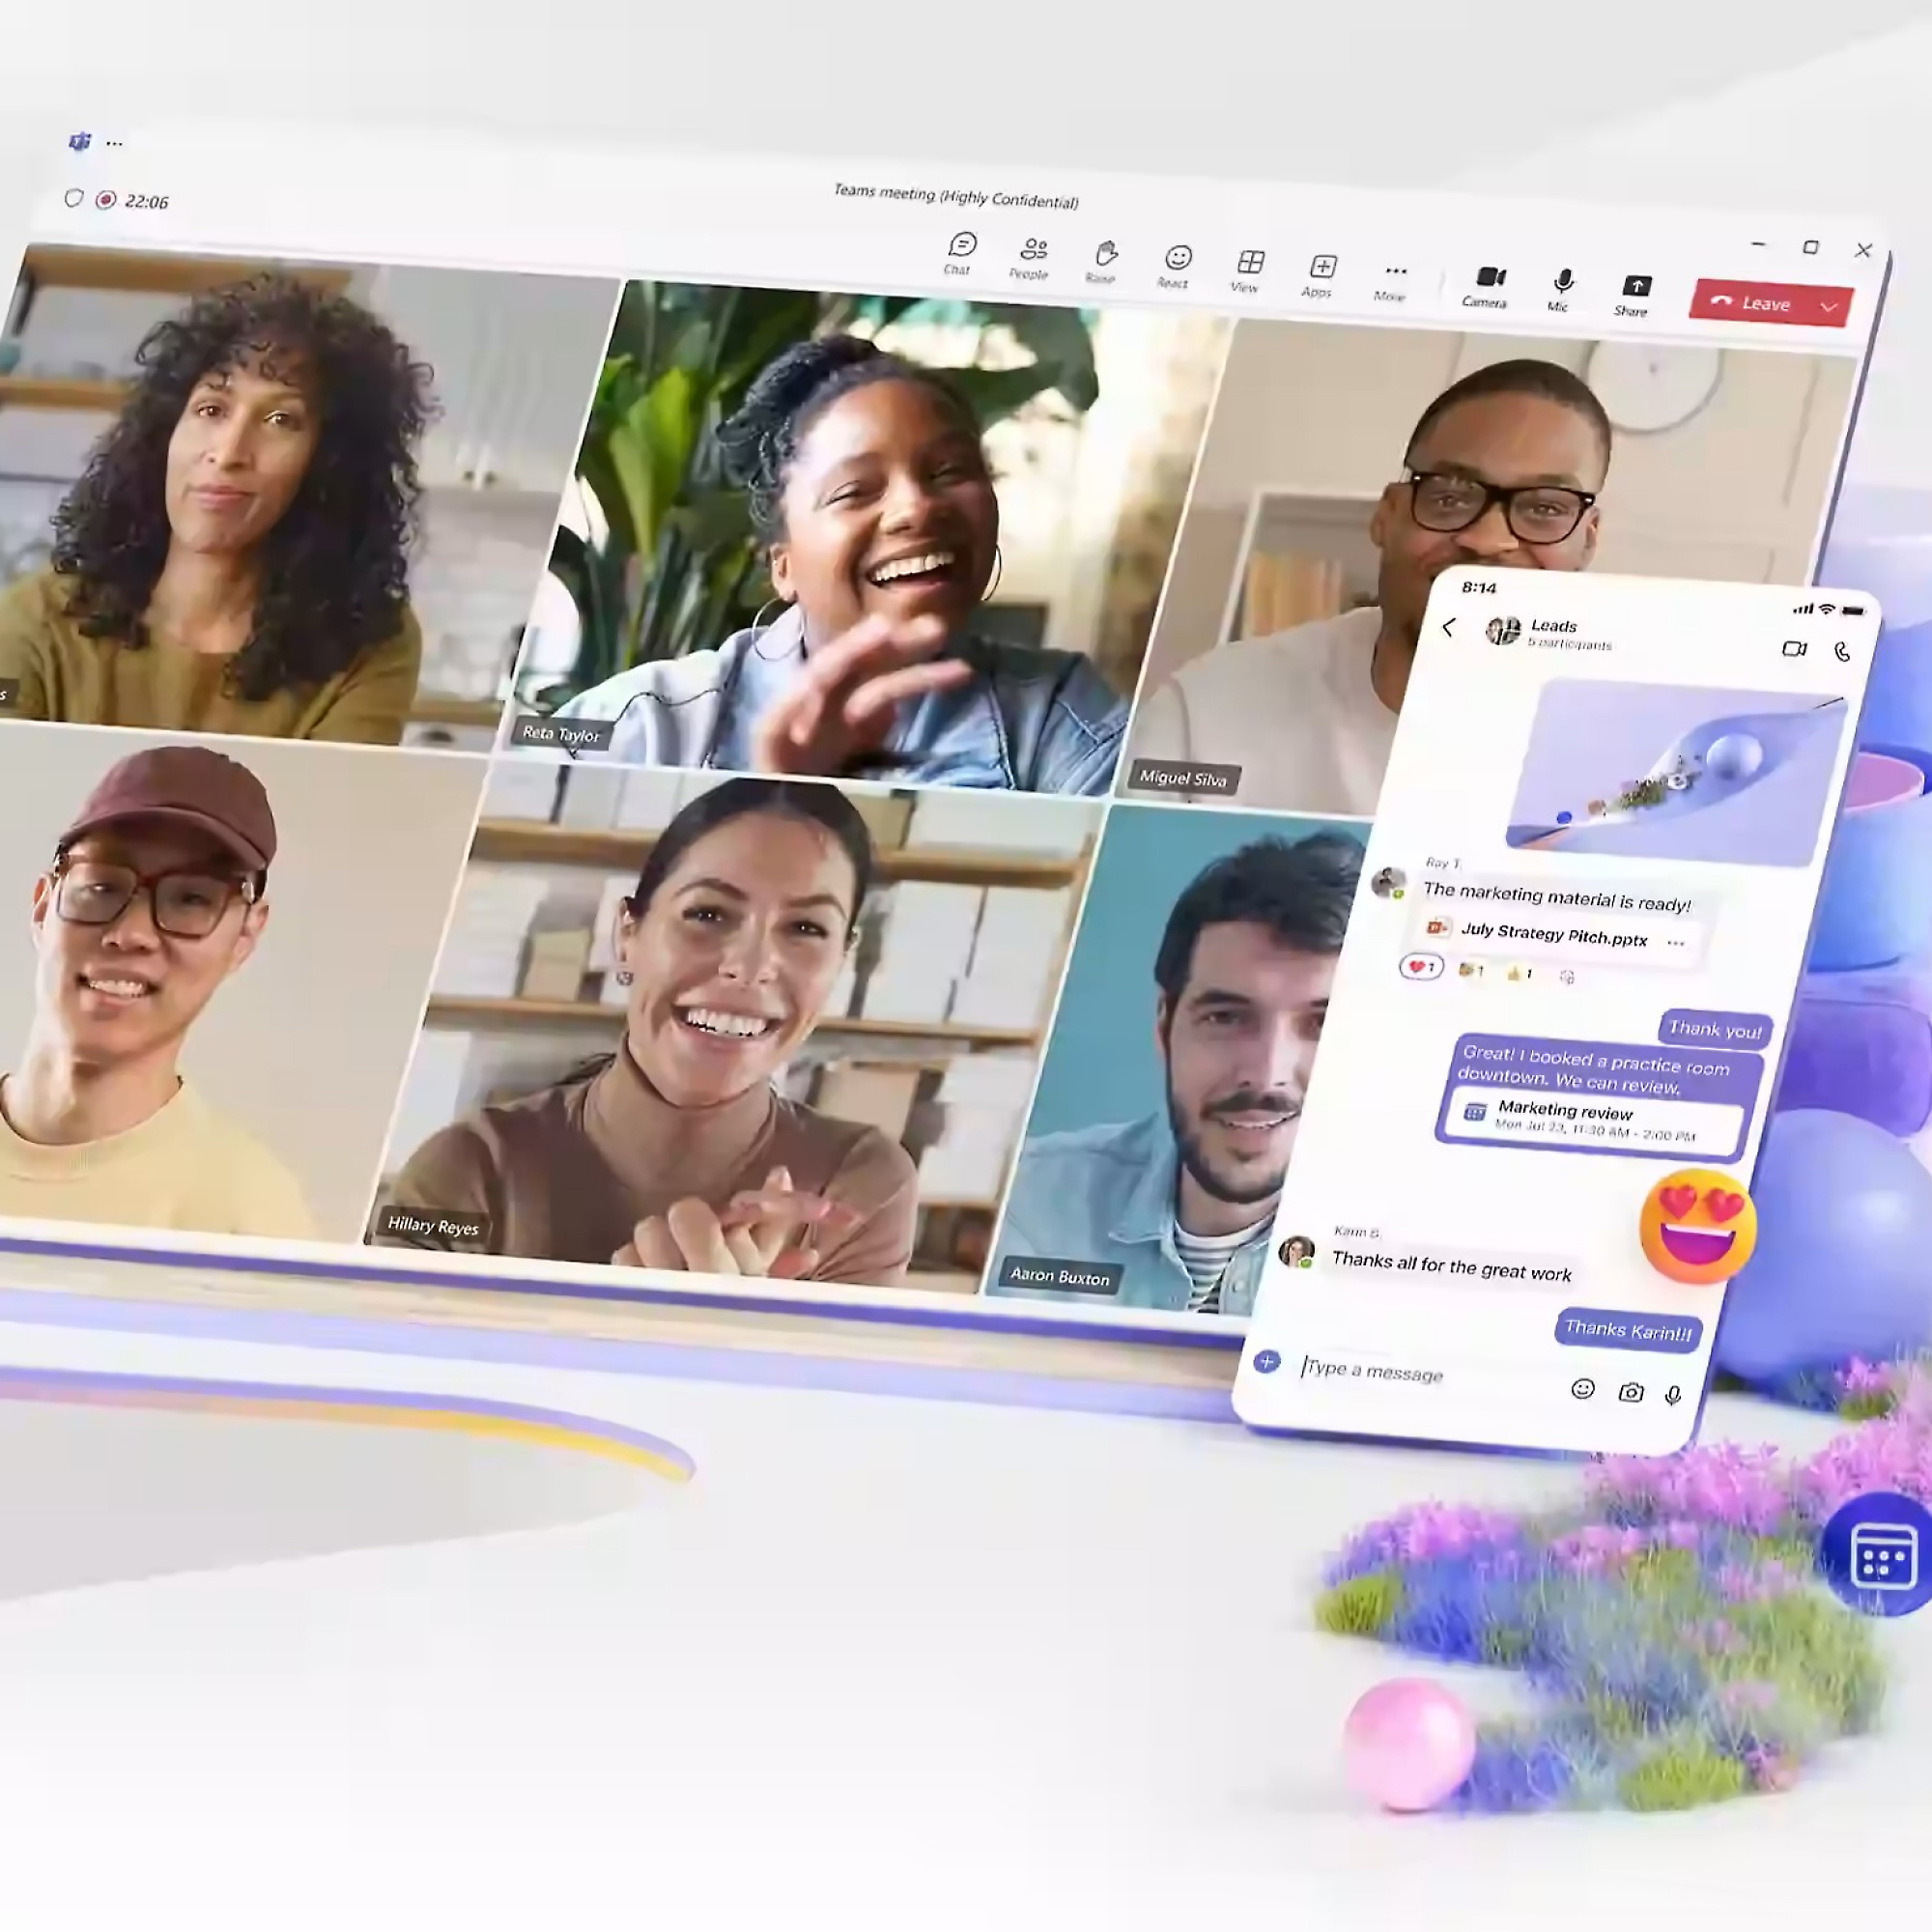 ממשק דיגיטלי המתאר שיחת וידאו עם חמישה משתתפים שונים